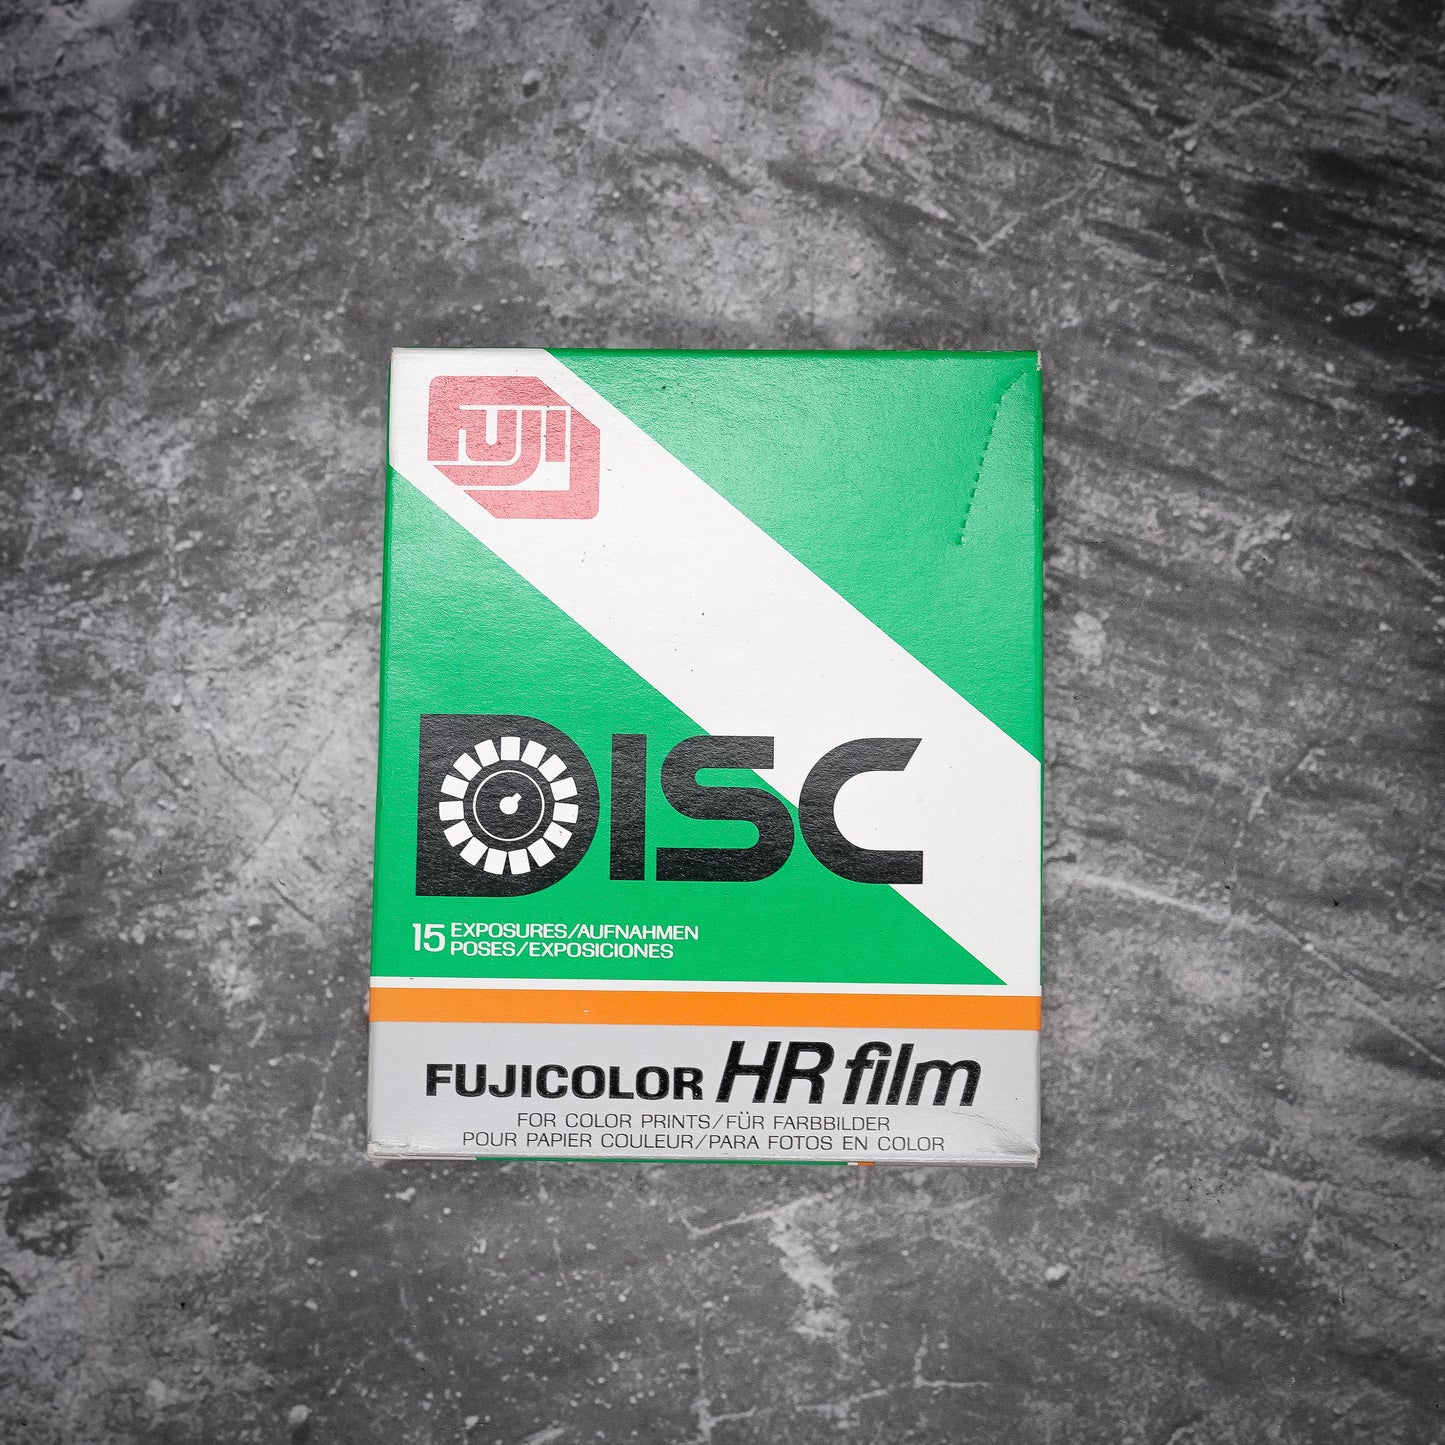 Expired Disc Film | Fujicolor HR | Sealed In Original Box